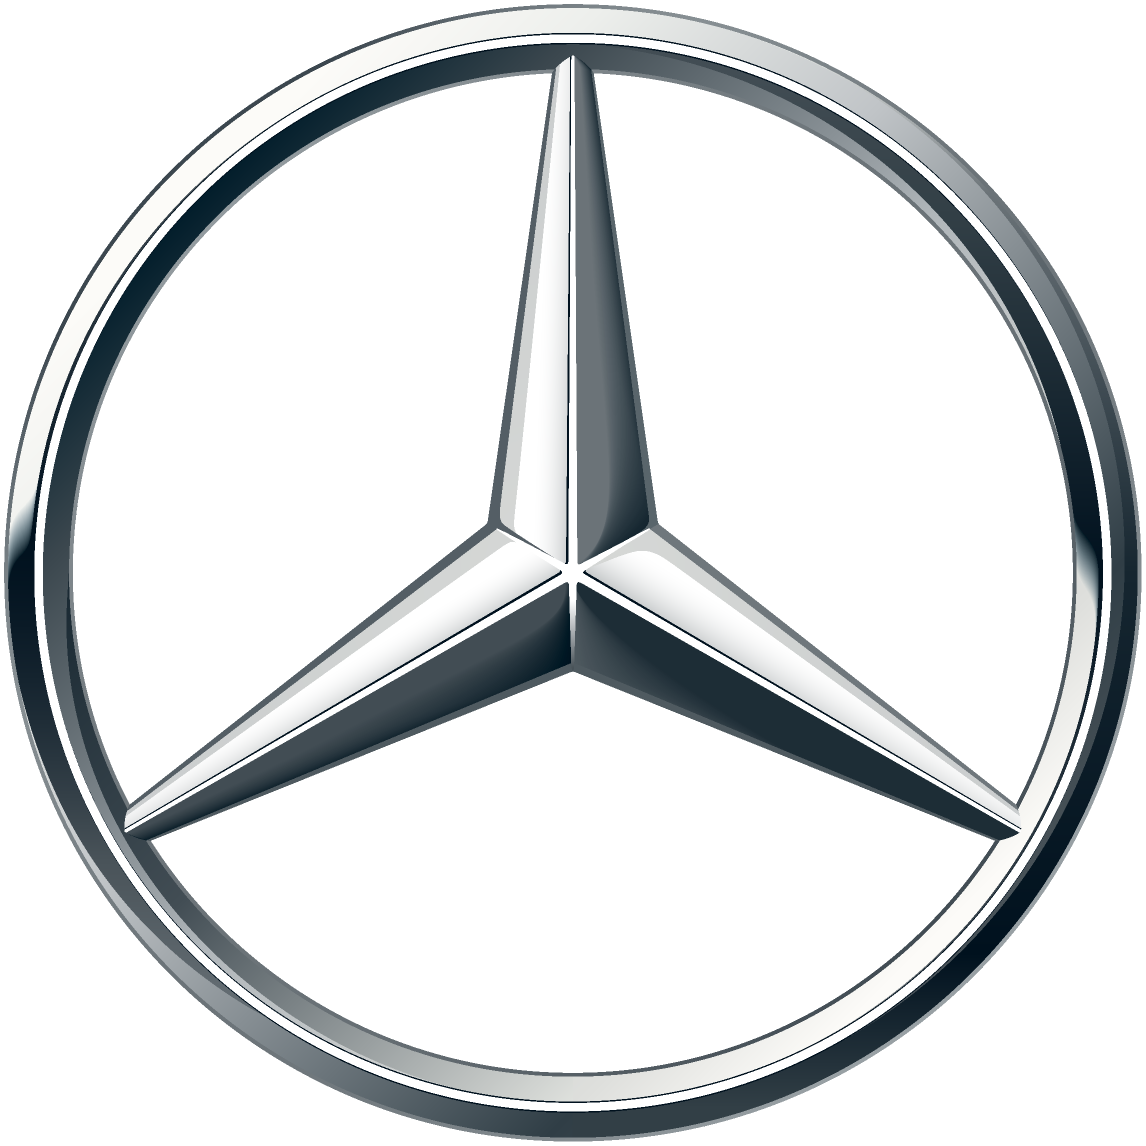 25 апреля 2016 компания Mercedes-Benz учредила и вручила специальные призы для победителей в номинации Ди-джей